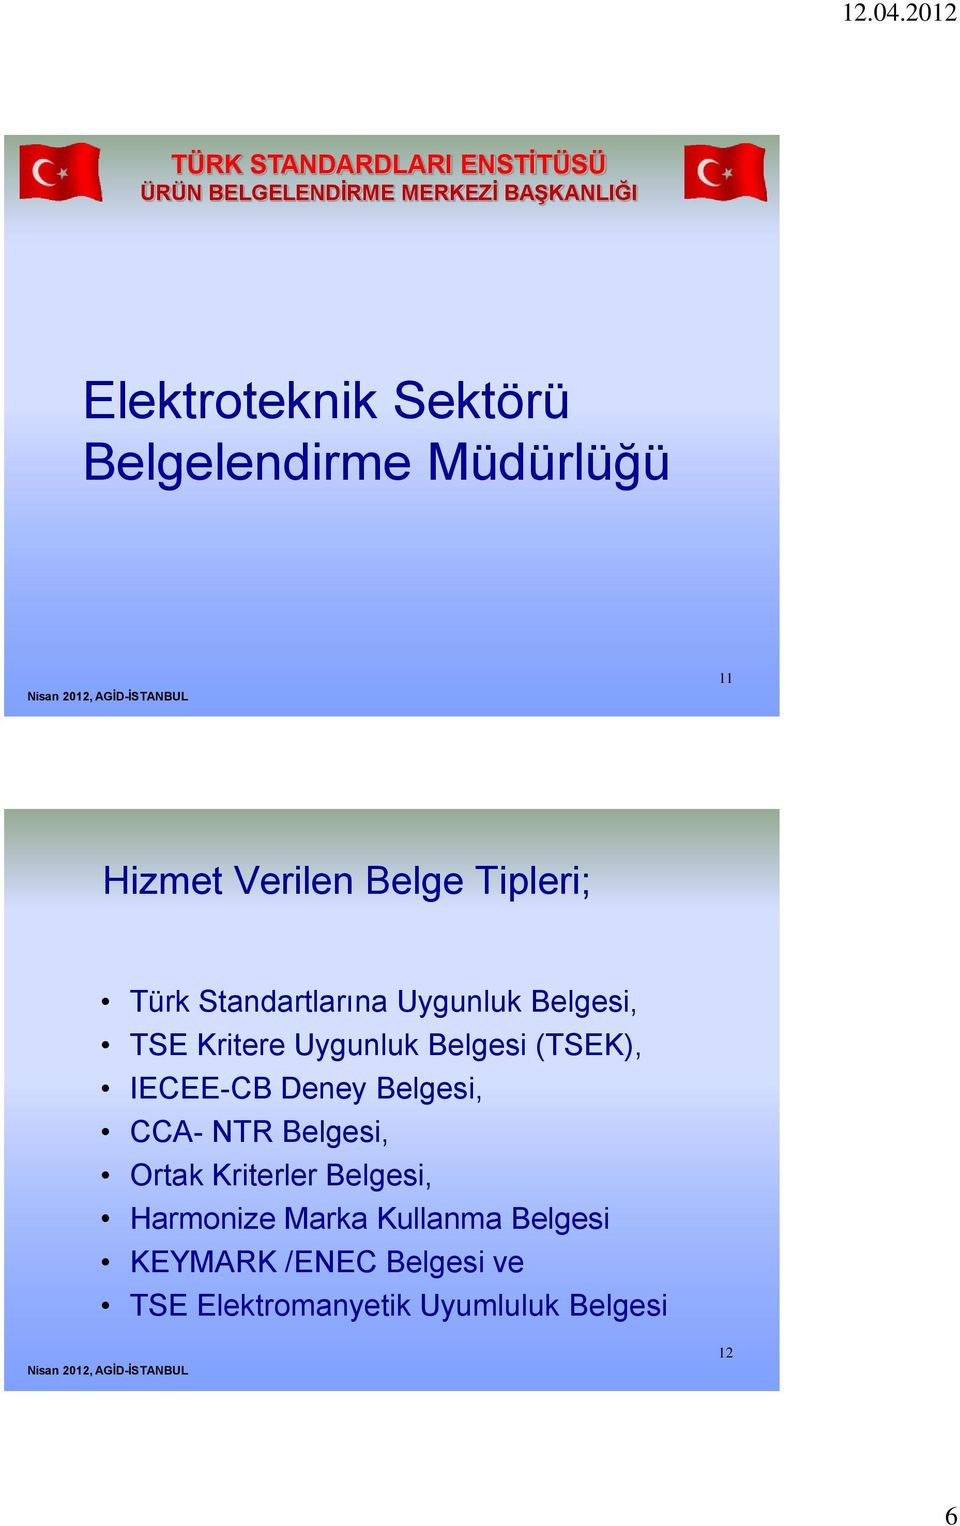 TSE Kritere Uygunluk Belgesi (TSEK), IECEE-CB Deney Belgesi, CCA- NTR Belgesi, Ortak Kriterler